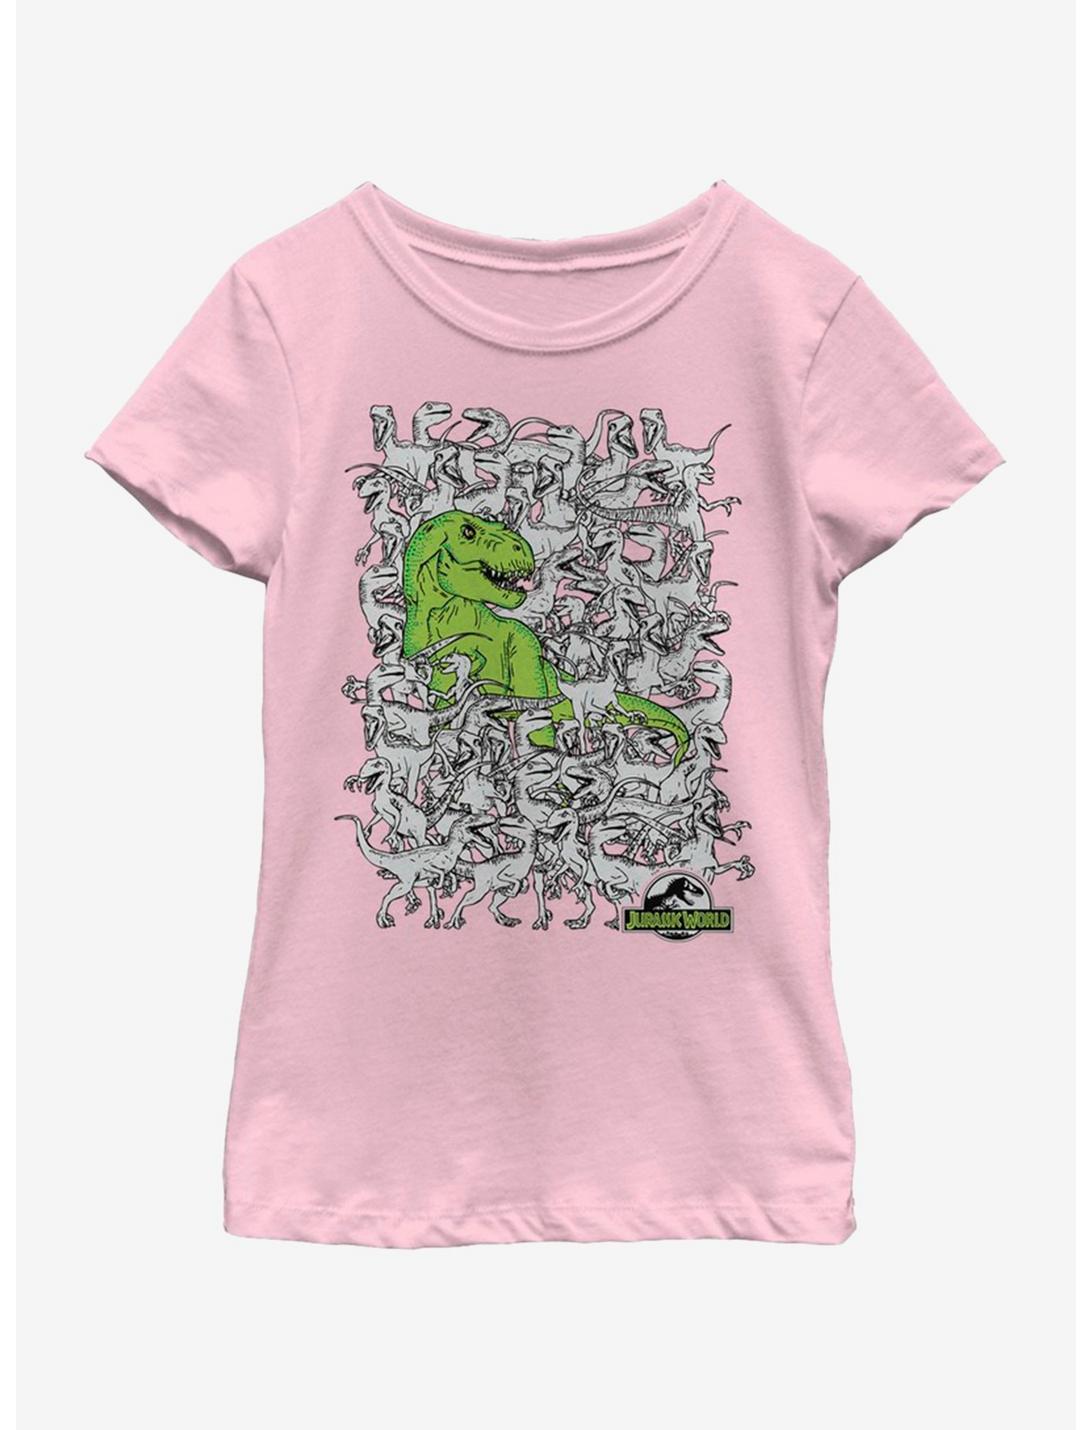 Jurassic Park Hidden Rex Youth Girls T-Shirt, PINK, hi-res